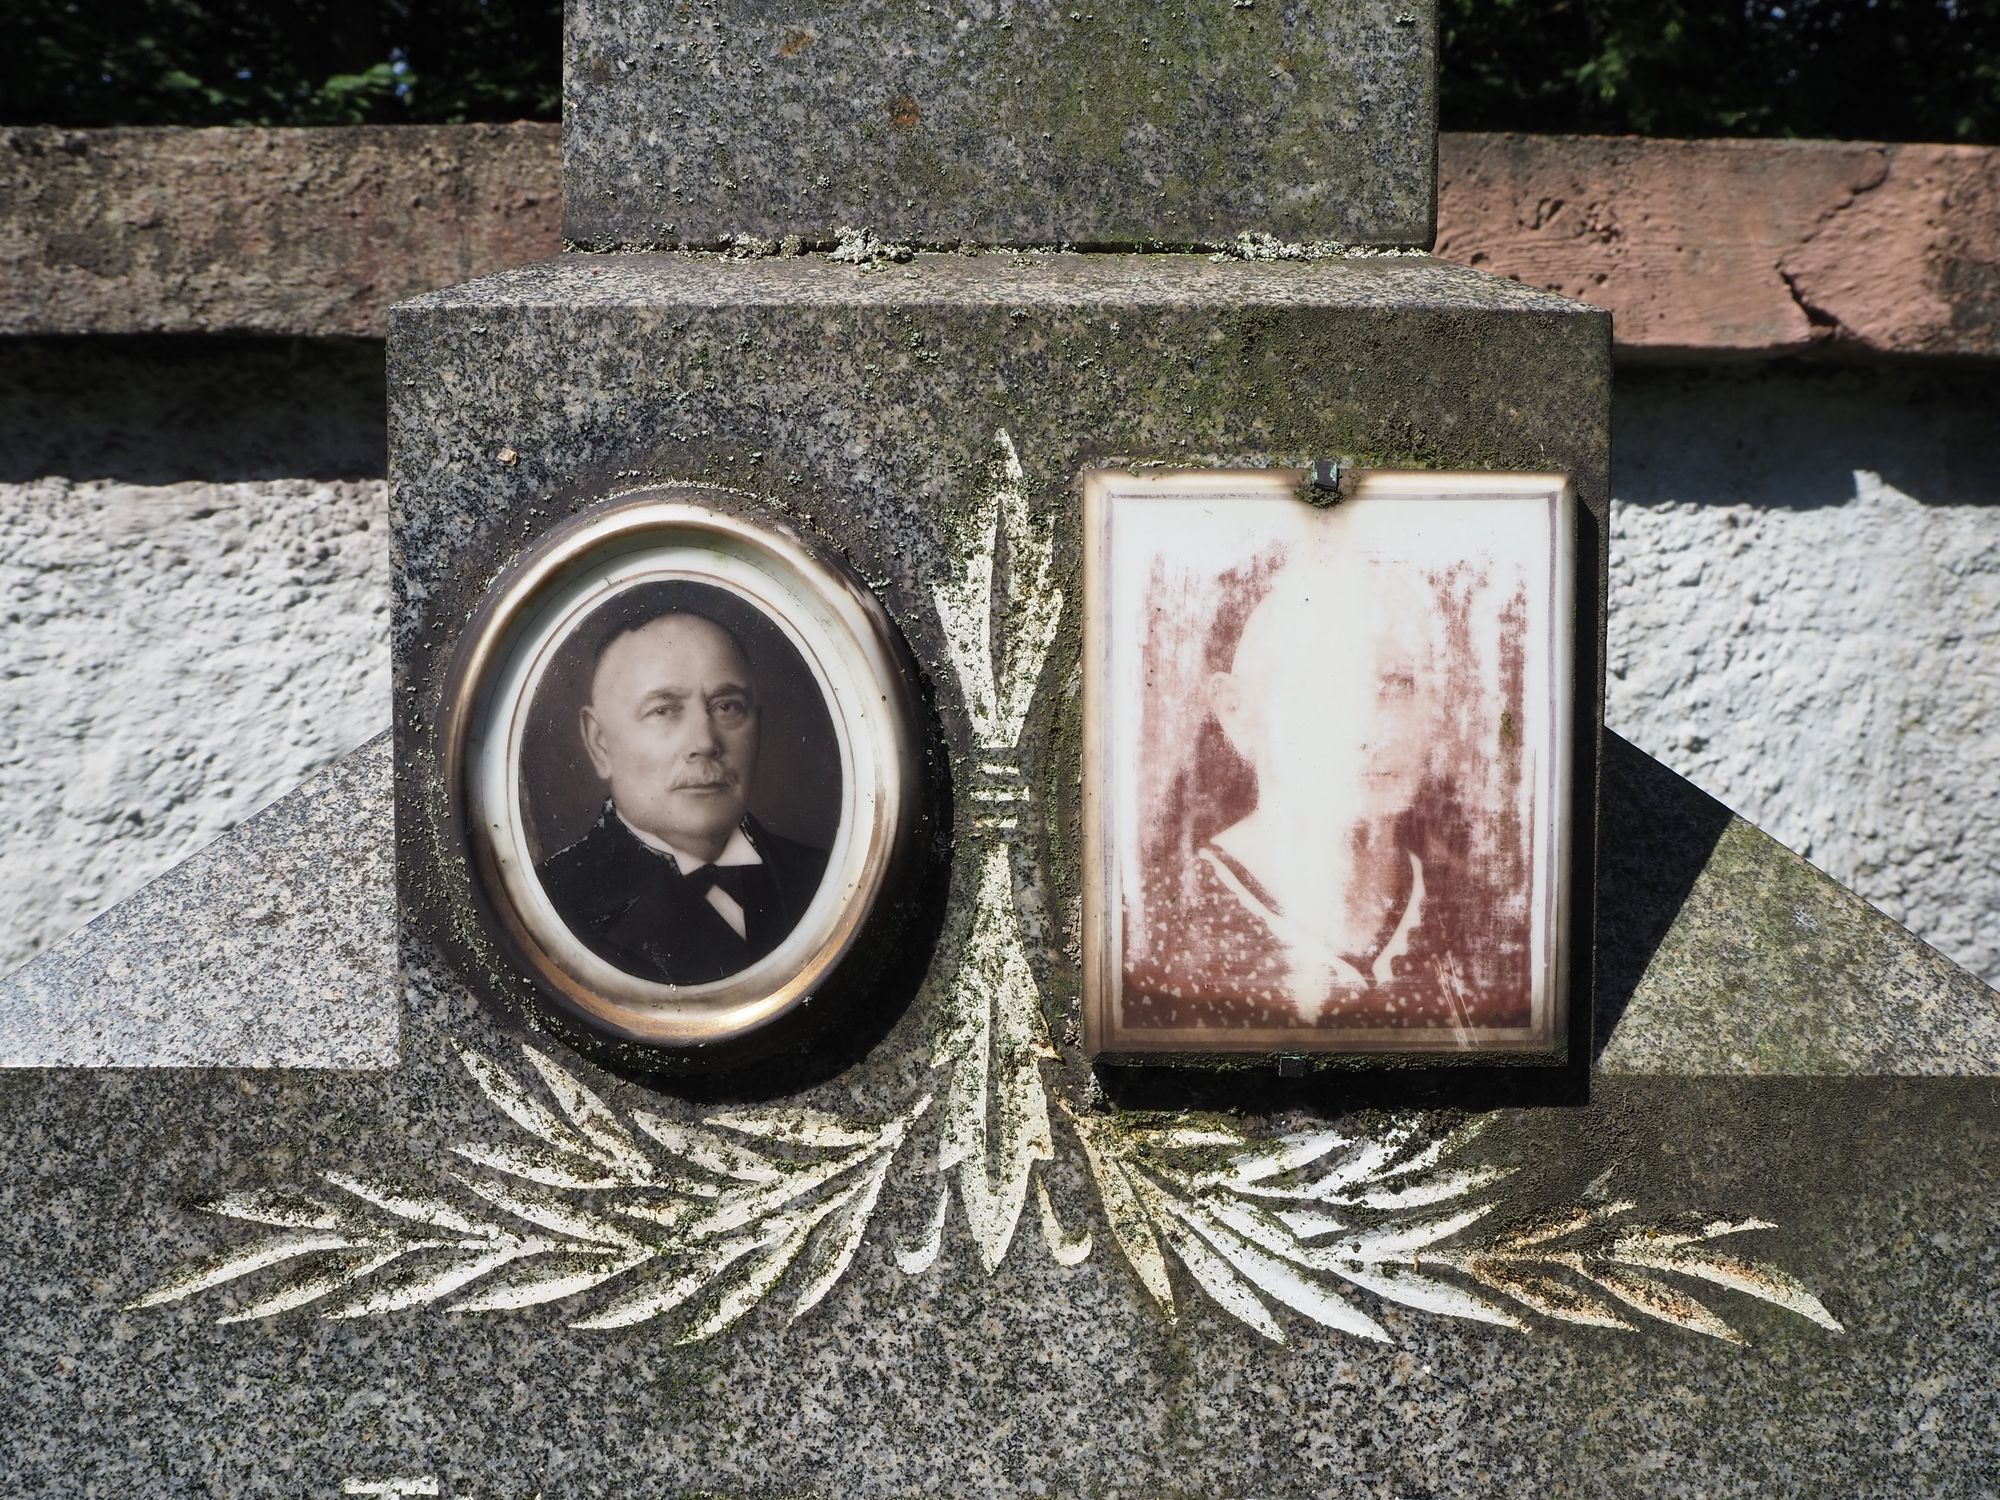 Fotografie z nagrobka Jana i Zuzanny Roik, cmentarz w Czeskim Cieszynie, stan z 2022 r.